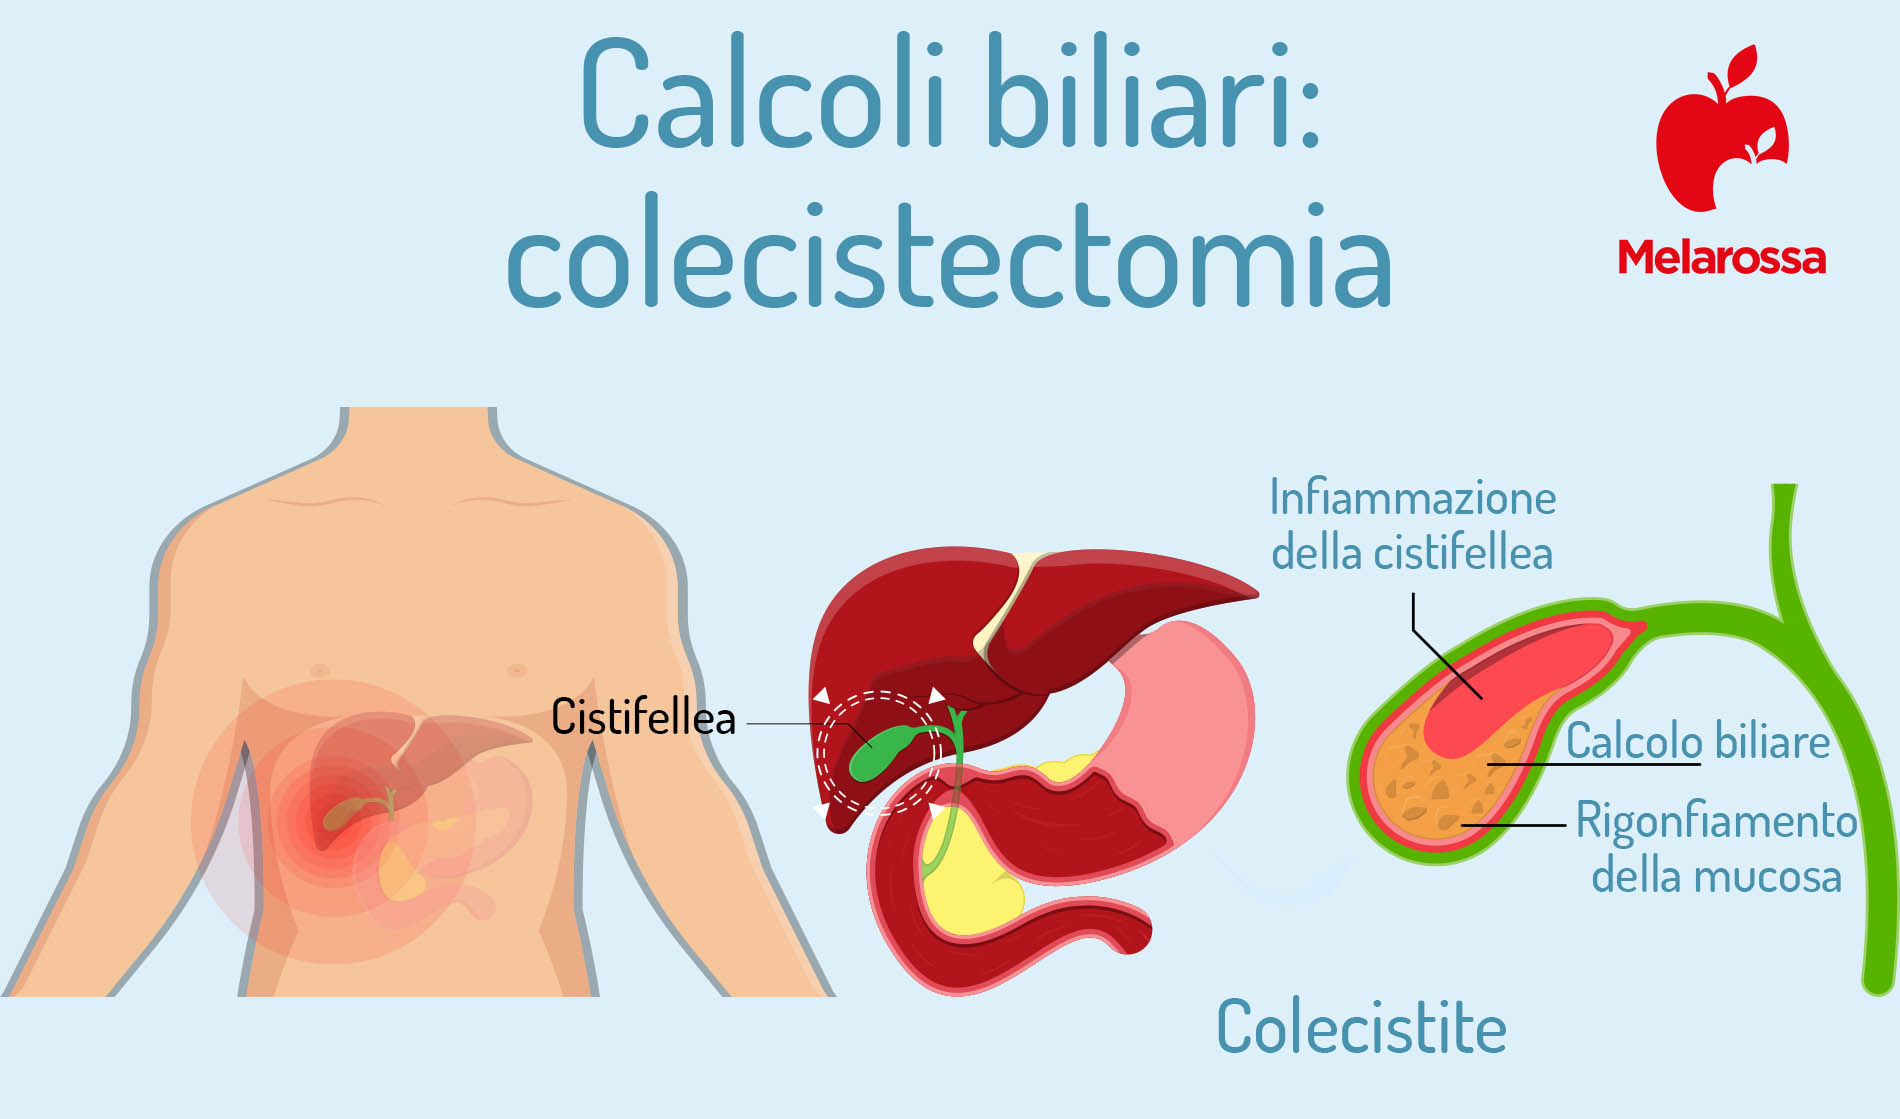 calcoli biliari: colecistectomia